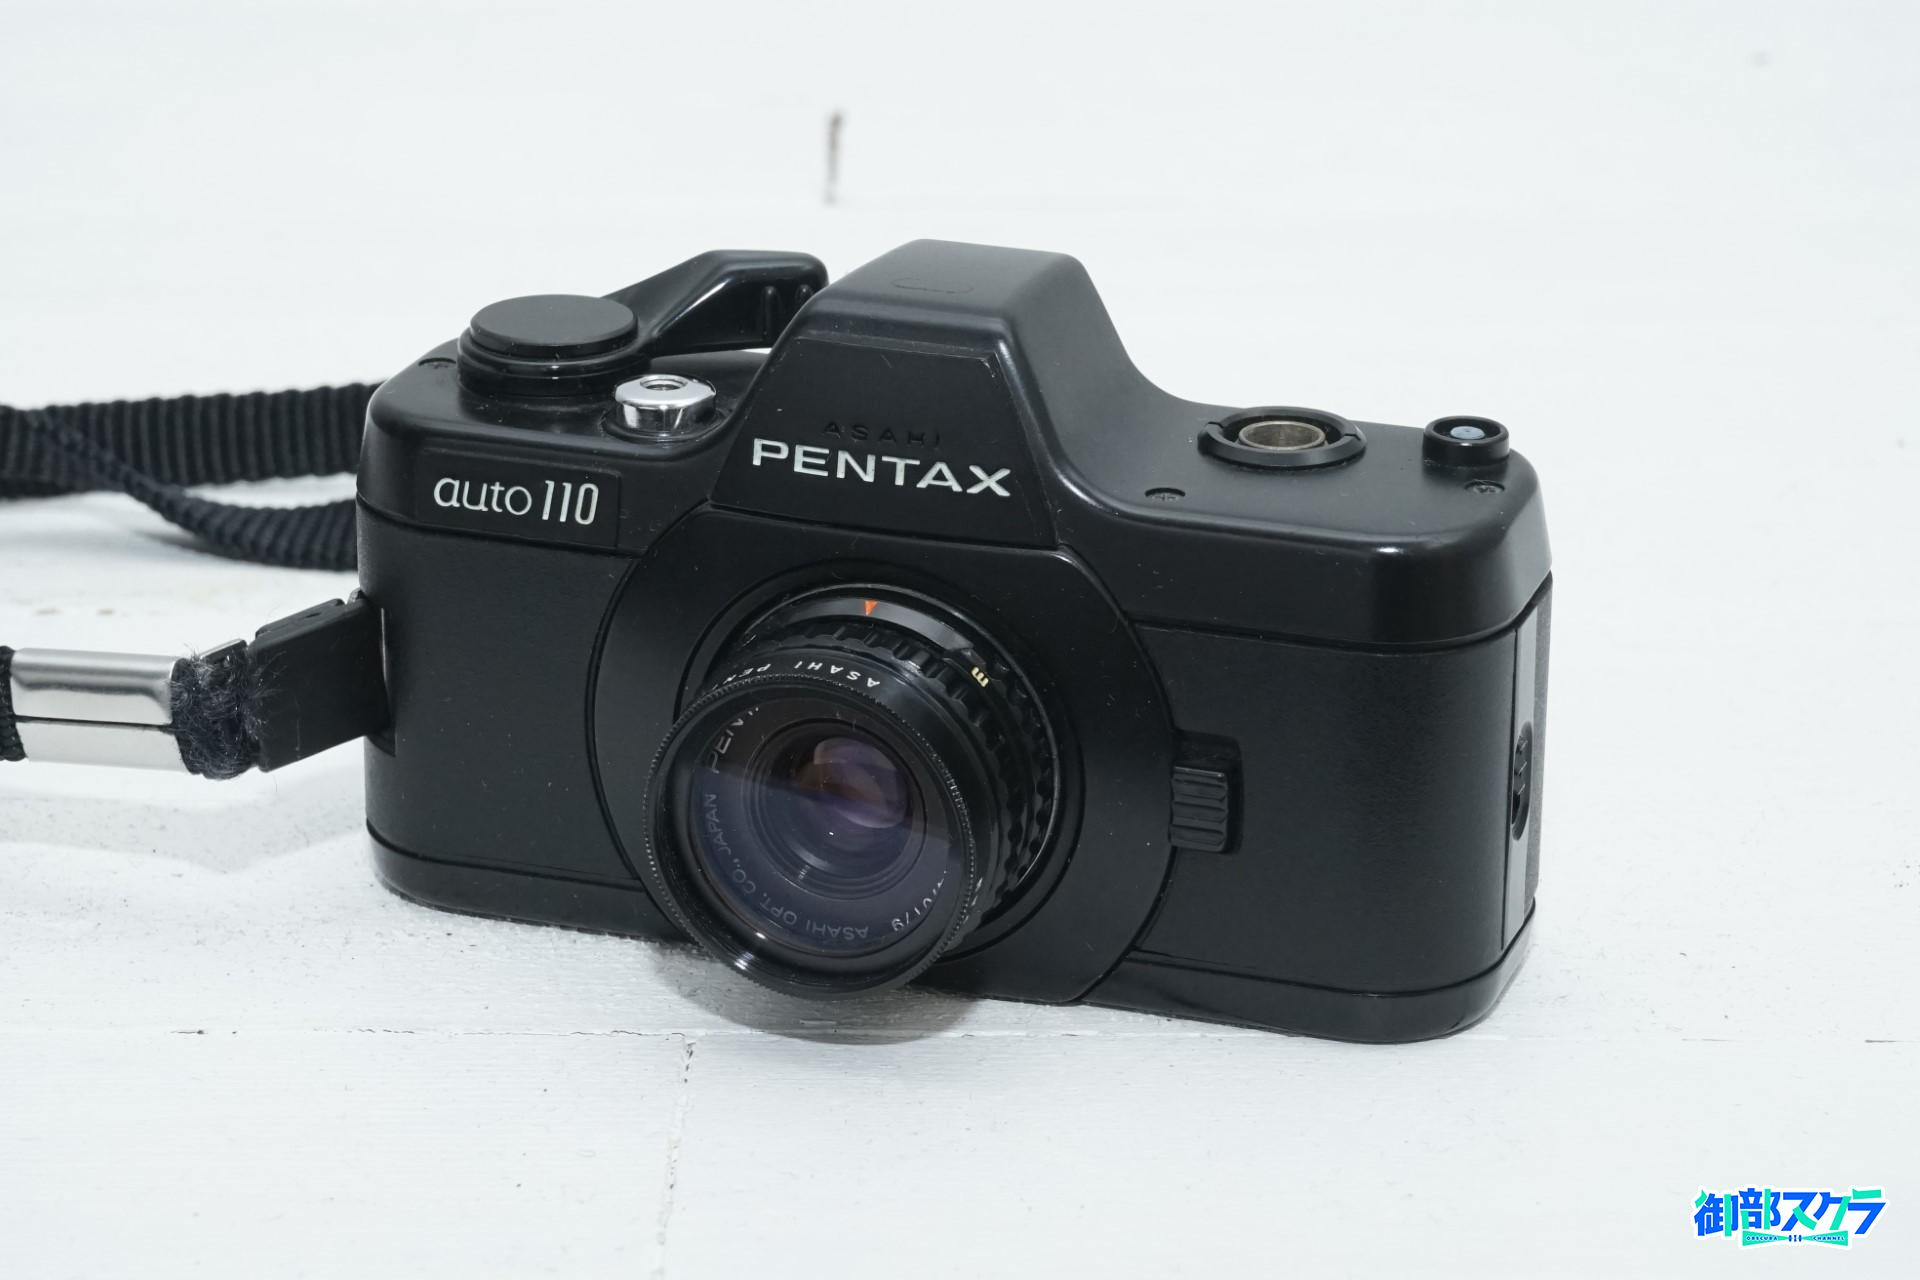 PENTAX auto110（オート110） 110フィルム使用のフィルム一眼レフ 